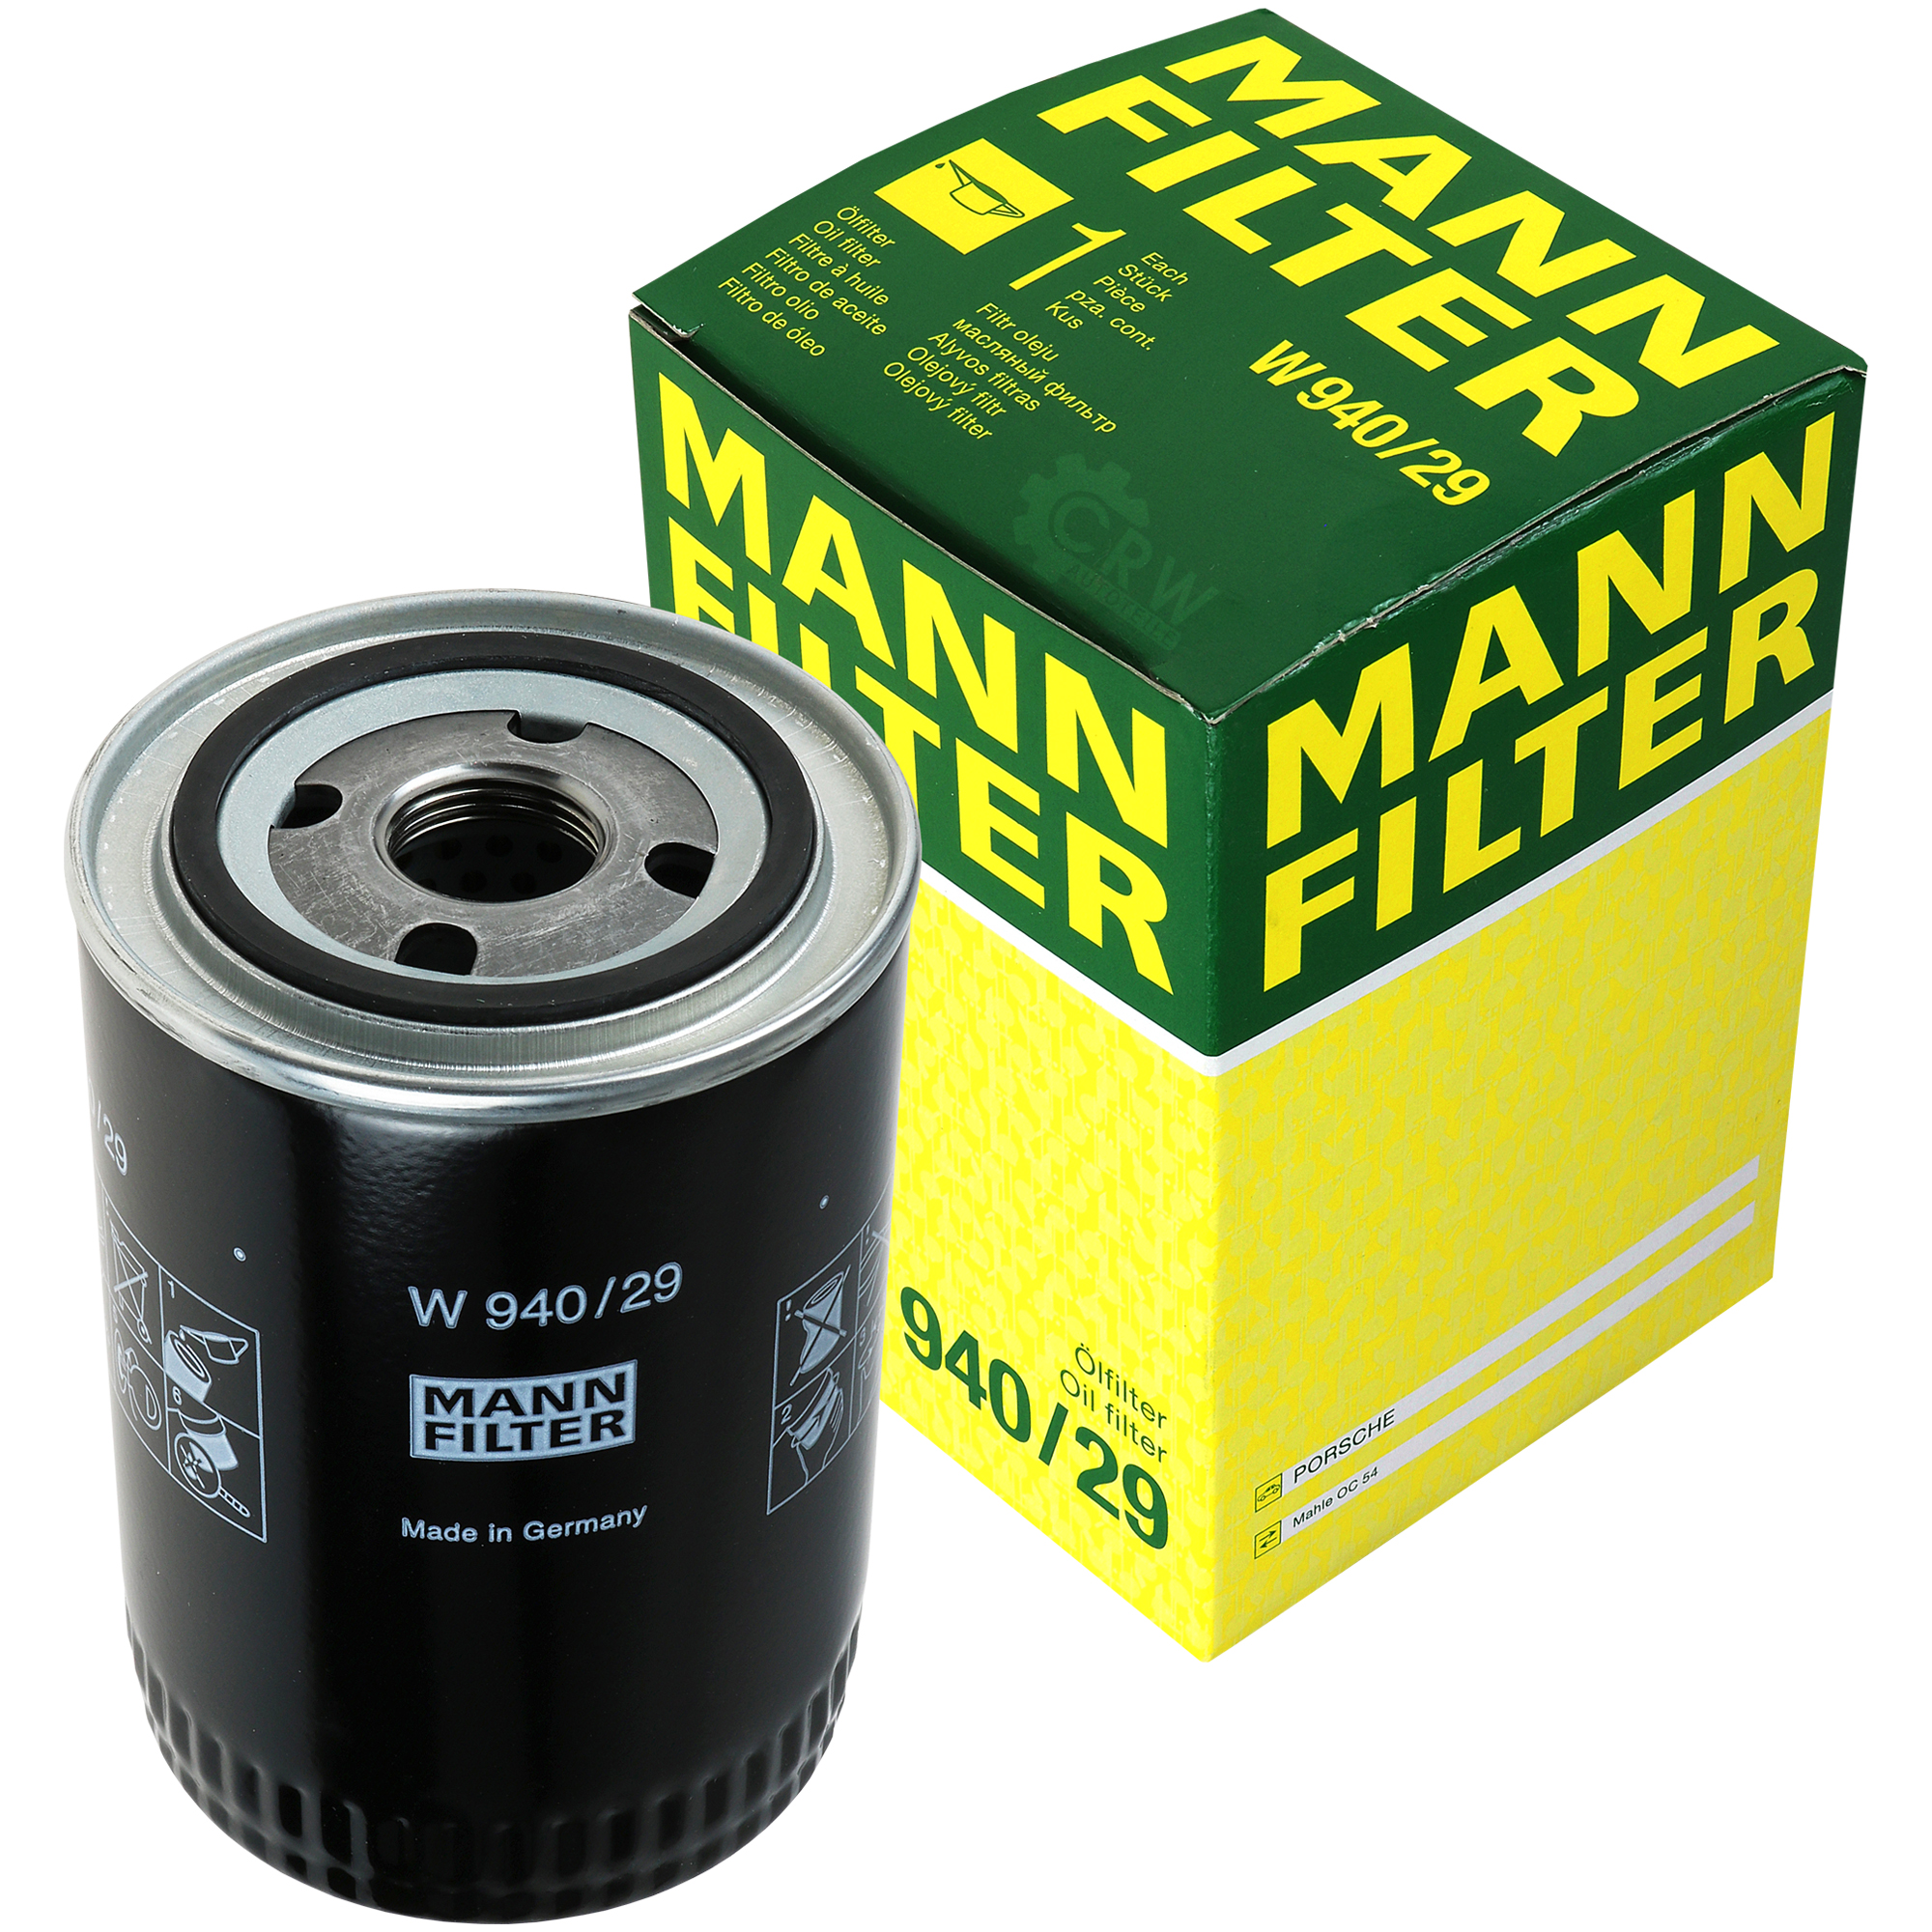 MANN-FILTER Ölfilter W 940/29 Oil Filter